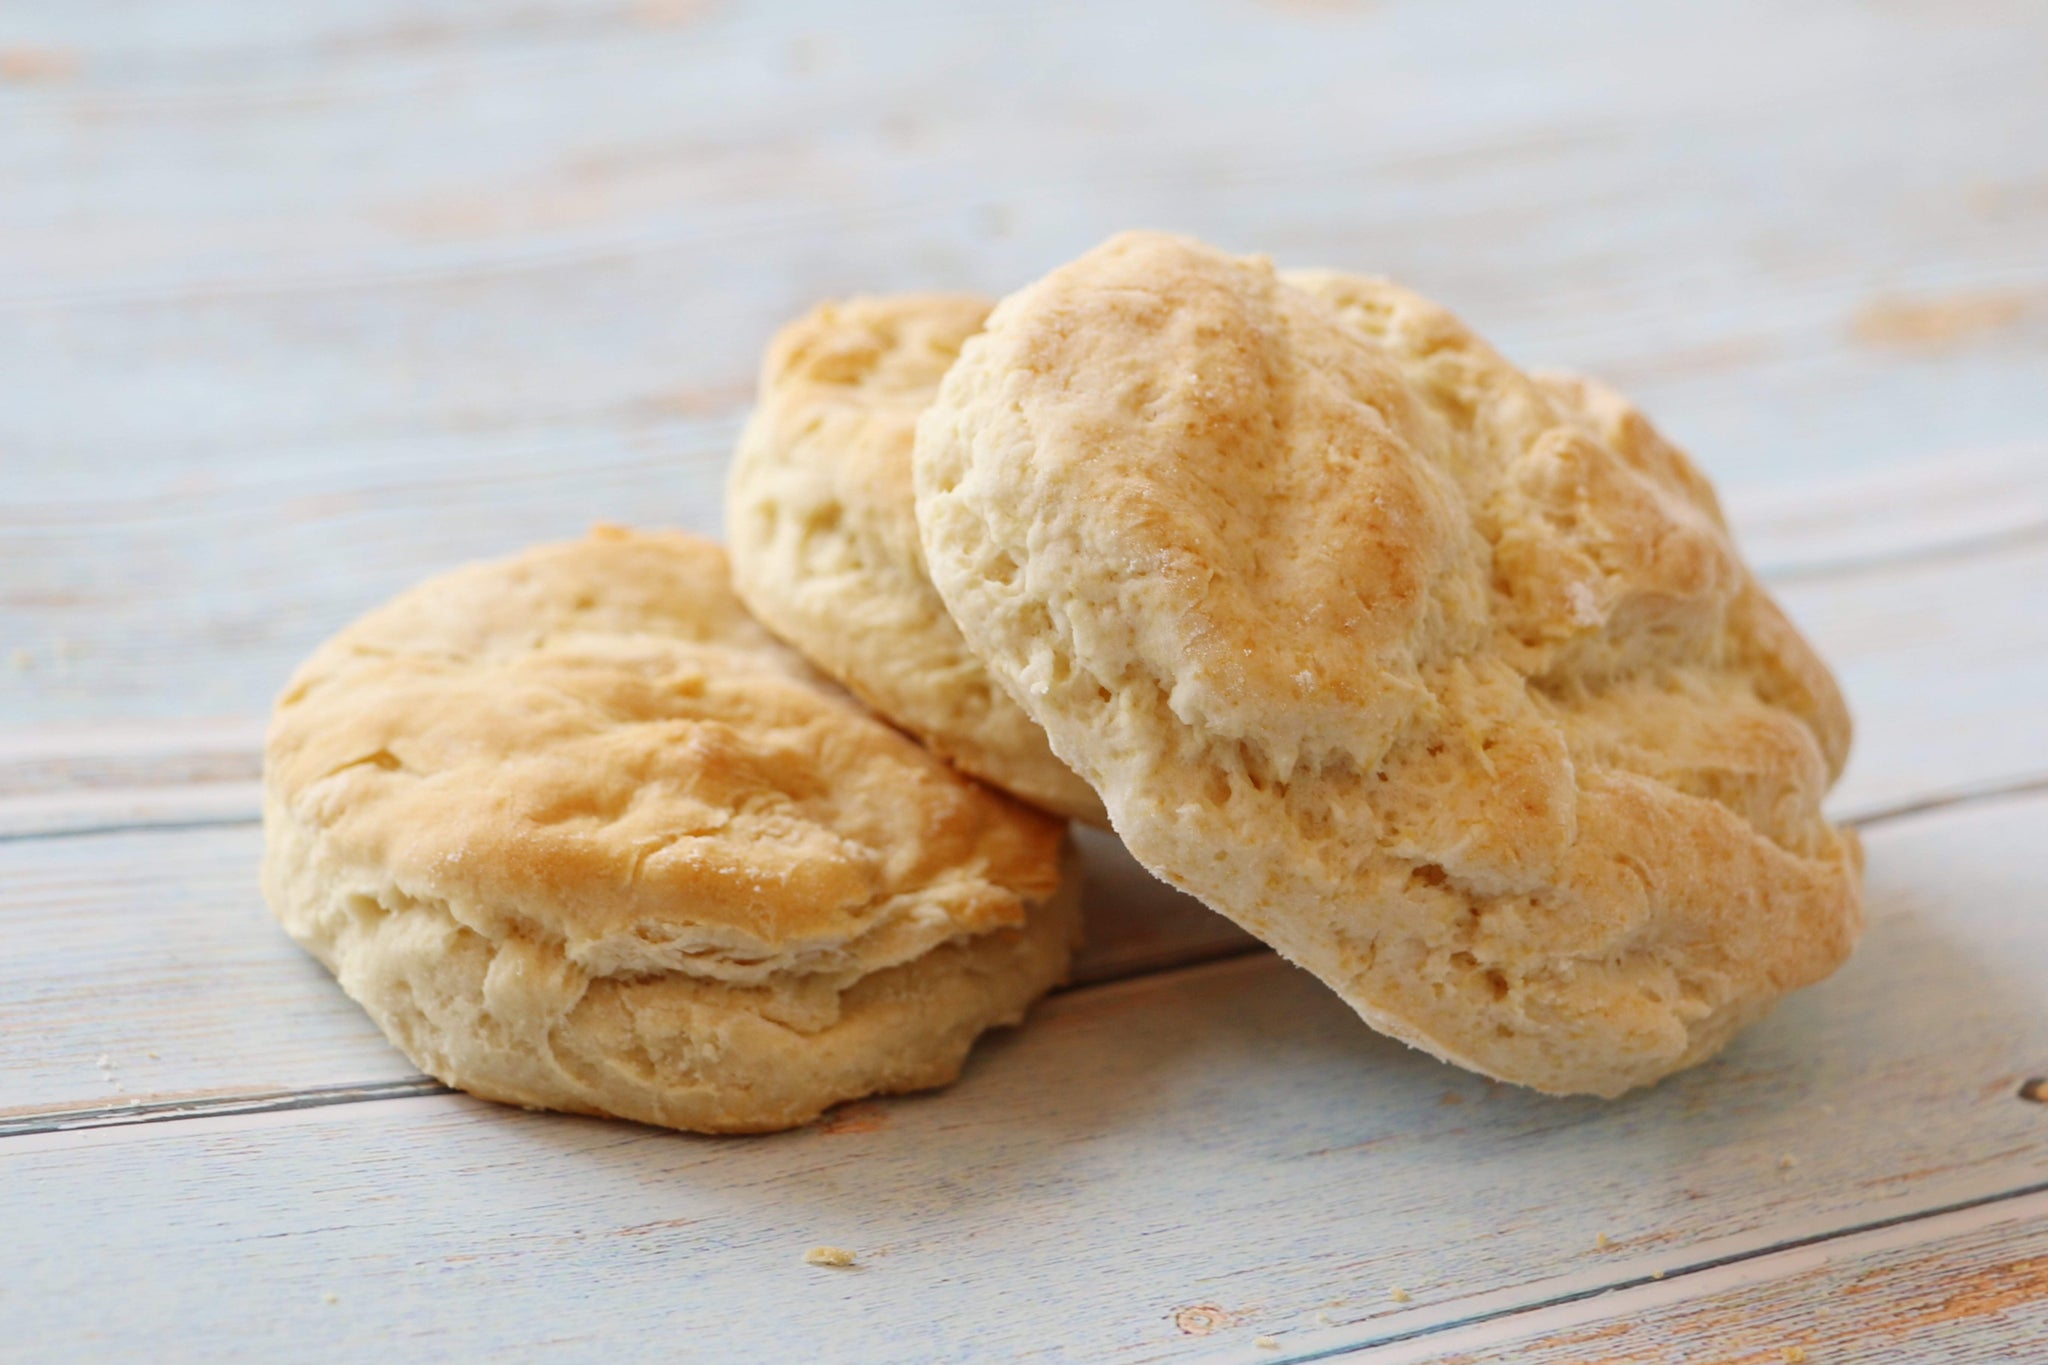 Gluten-Free Buttermilk Biscuits Mix Mom's Place enjoy